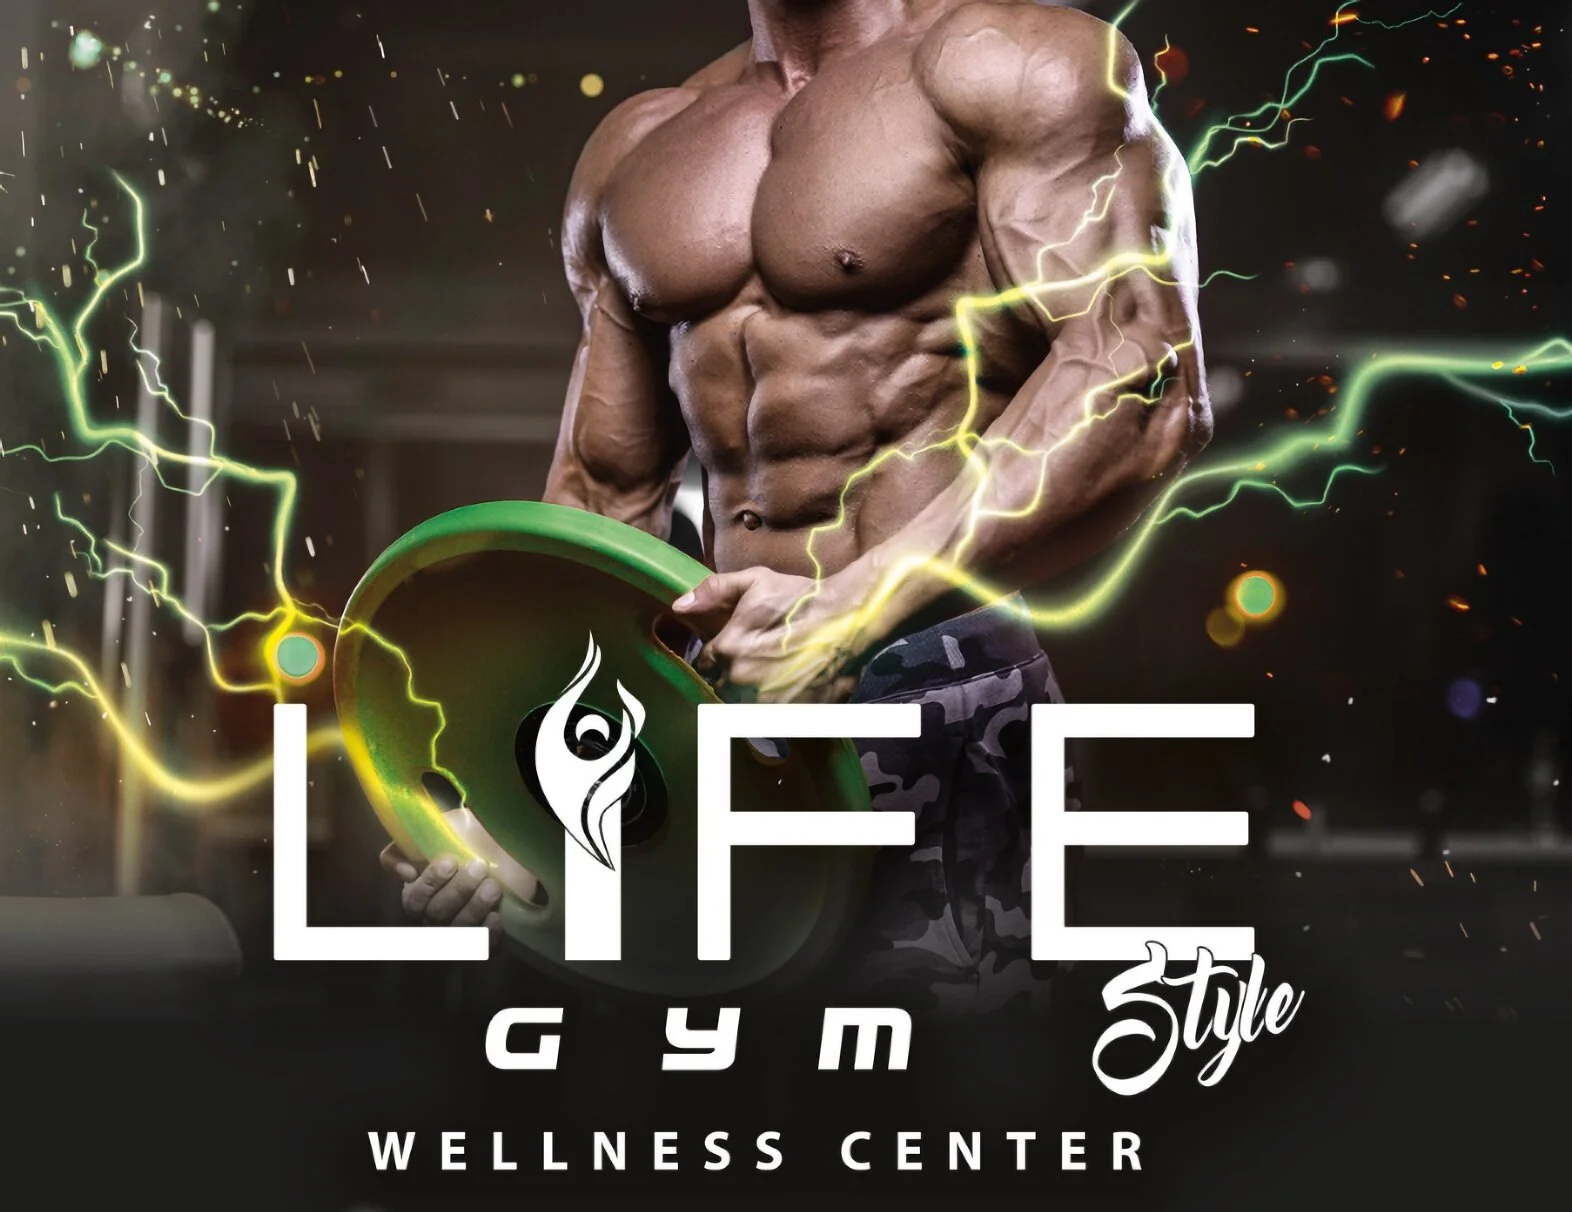 Gimnasio-life-gym-wellness-center-8365